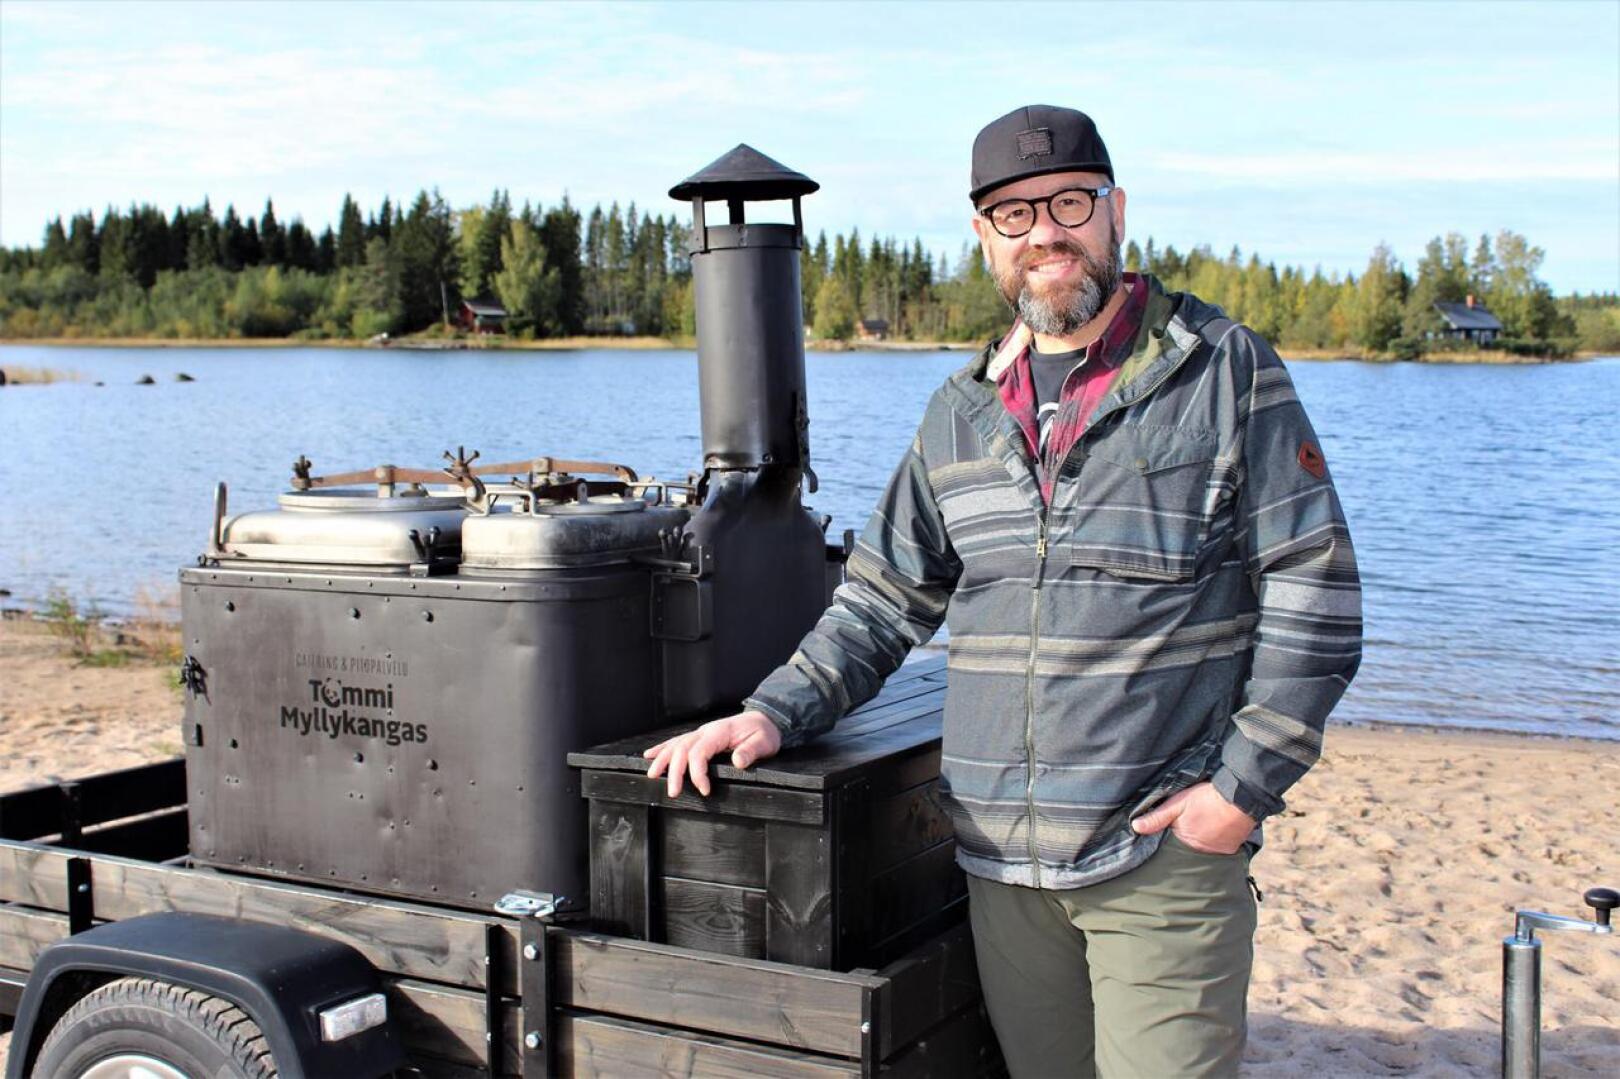 Kokkolalainen yksinyrittäjä Tommi Myllykangas nauttii erityisen paljon ruoan valmistamisesta luonnon keskellä.